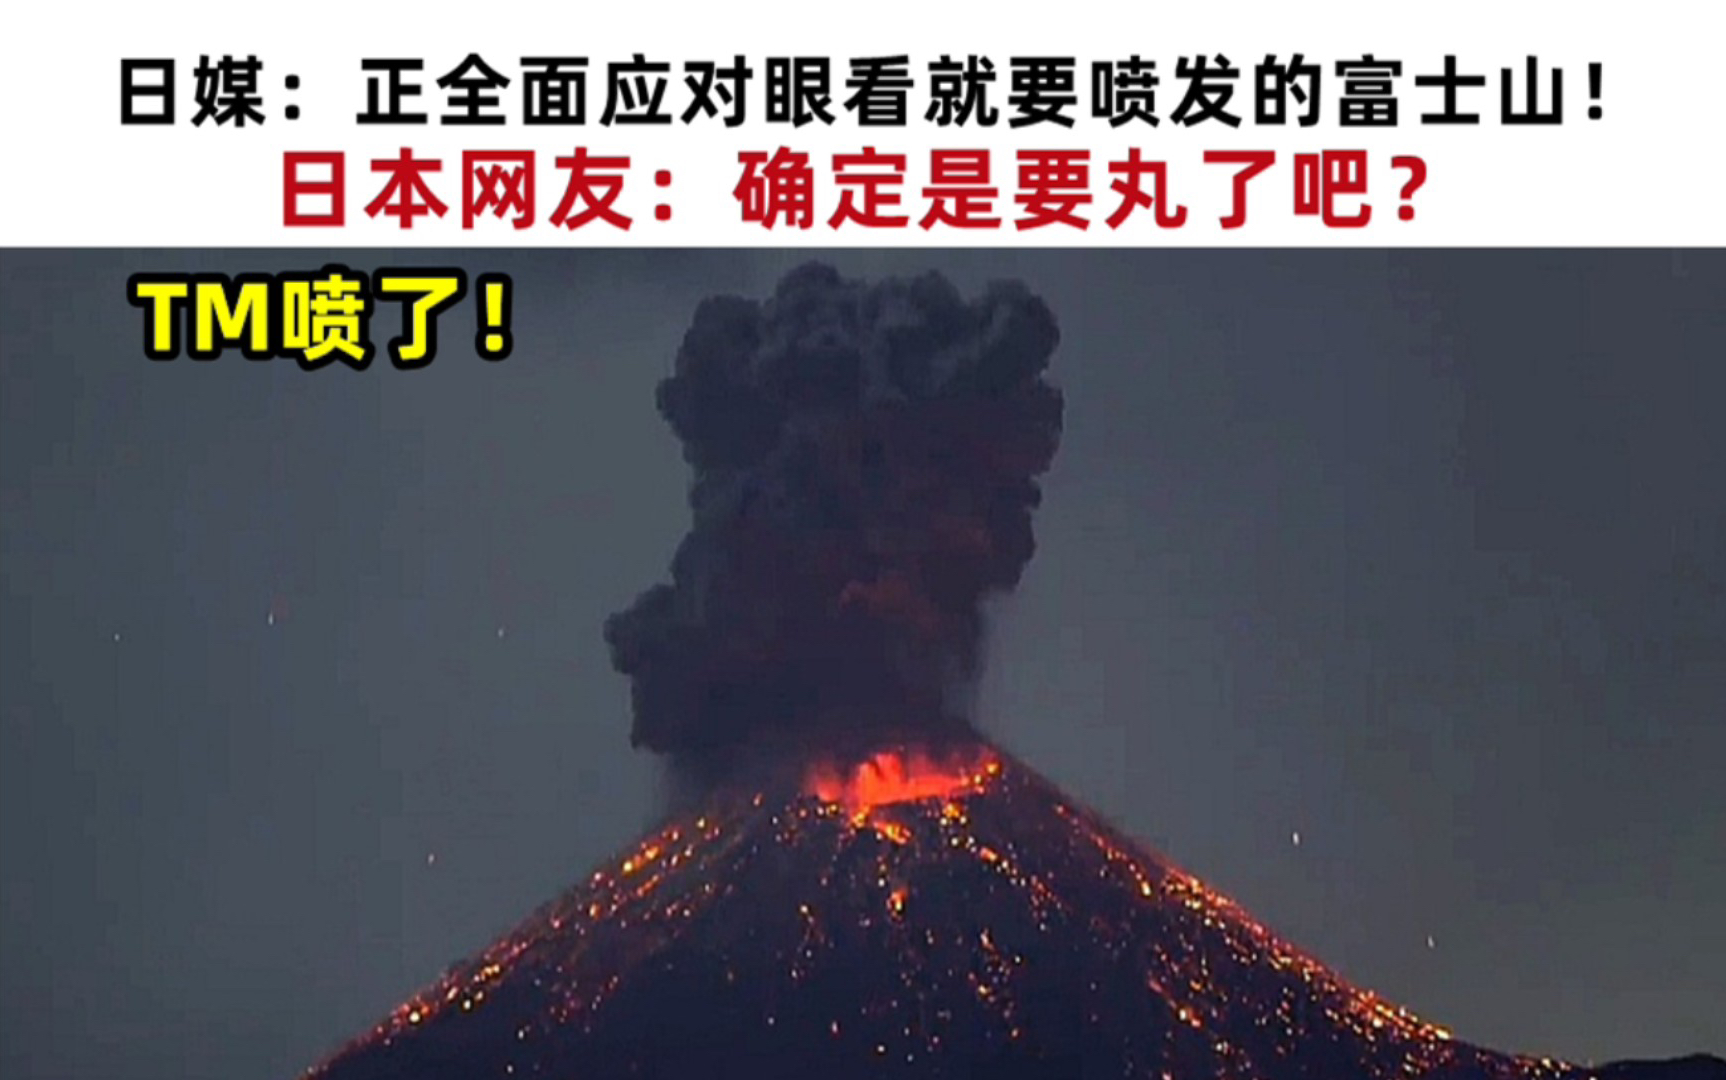 日警方正全面应对眼看就要喷发的富士山!日本网友:确定是药丸了吧!